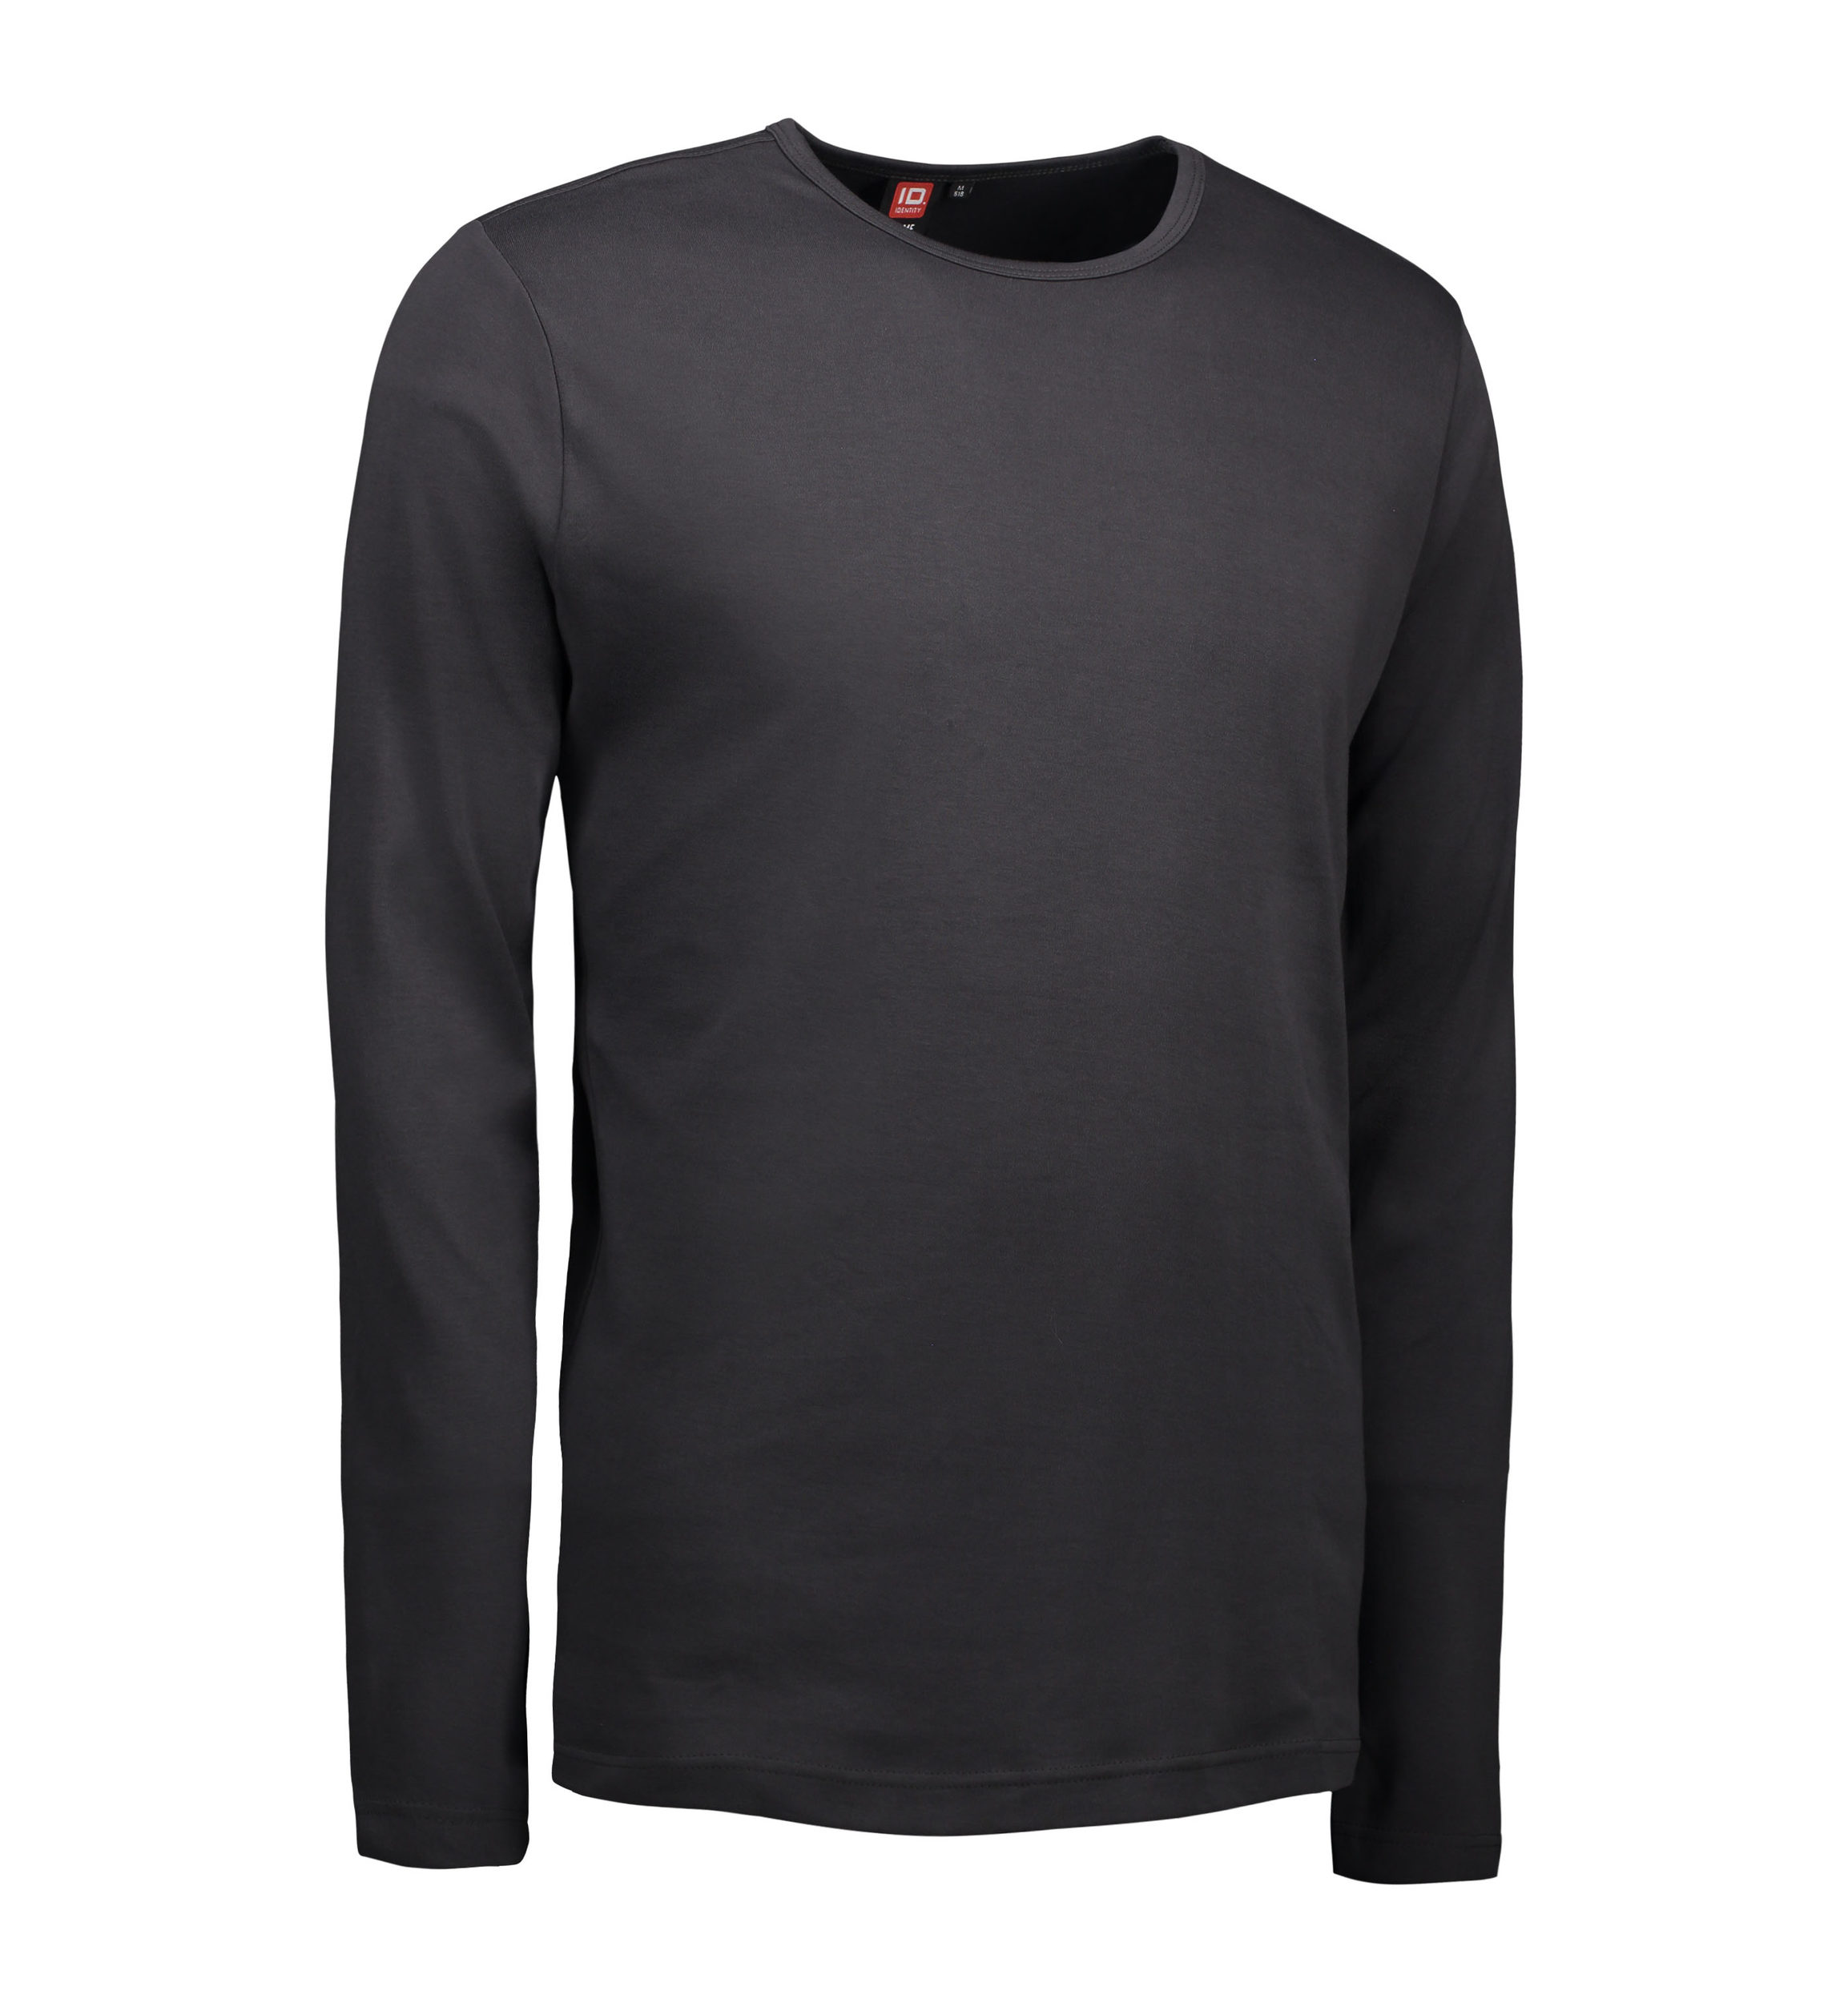 Se Koks grå langærmet t-shirt til mænd - 2XL hos Sygeplejebutikken.dk